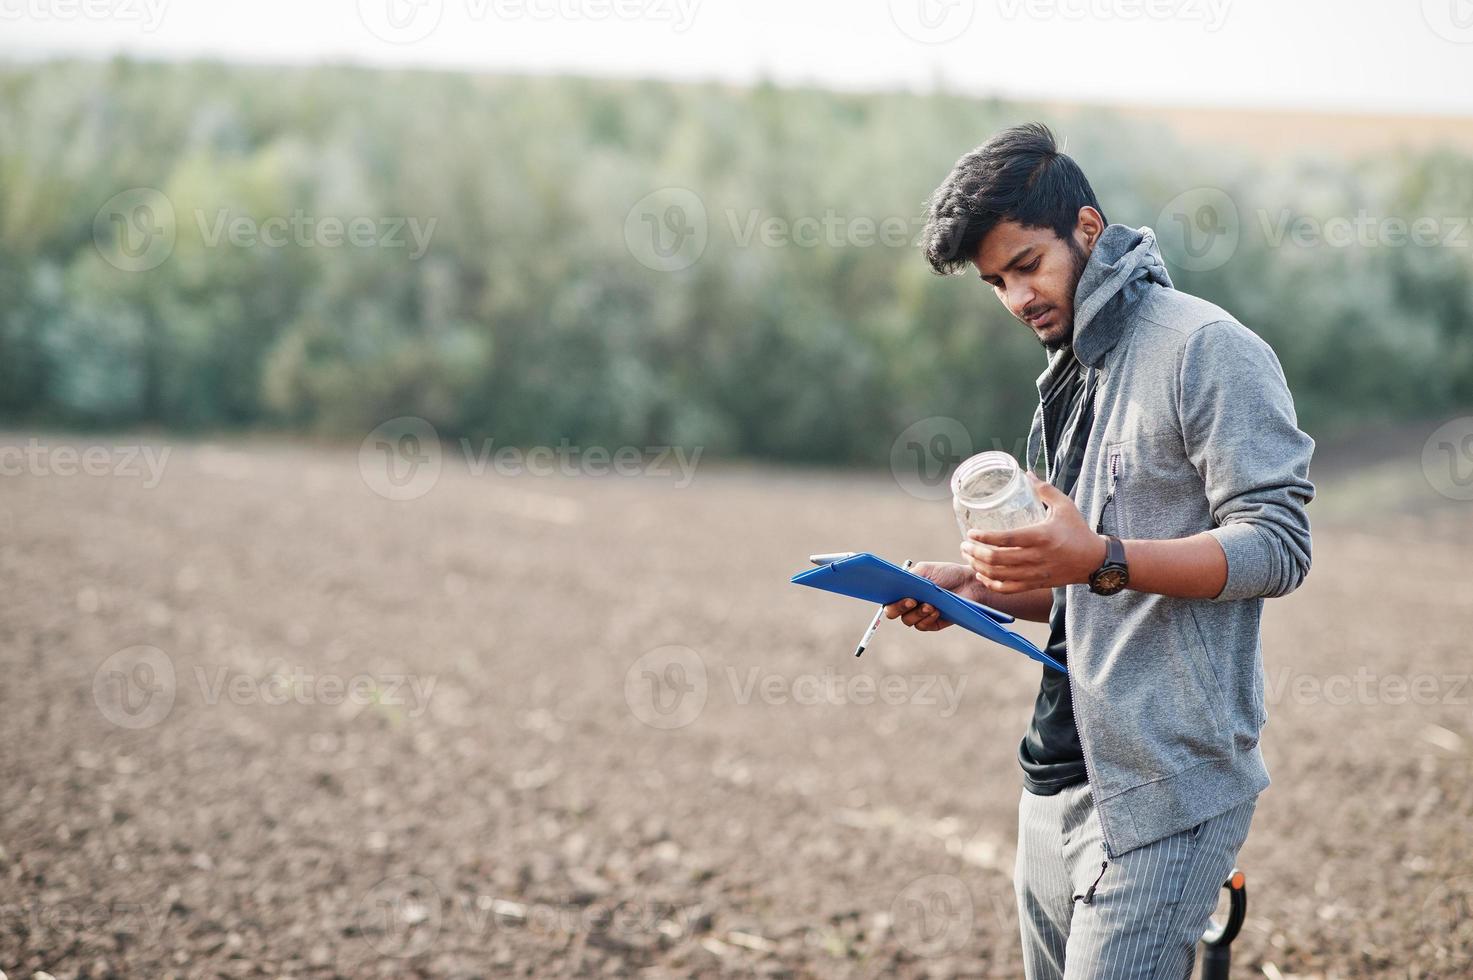 agricultor agrônomo do sul da Ásia com pá inspecionando o solo preto. conceito de produção agrícola. foto